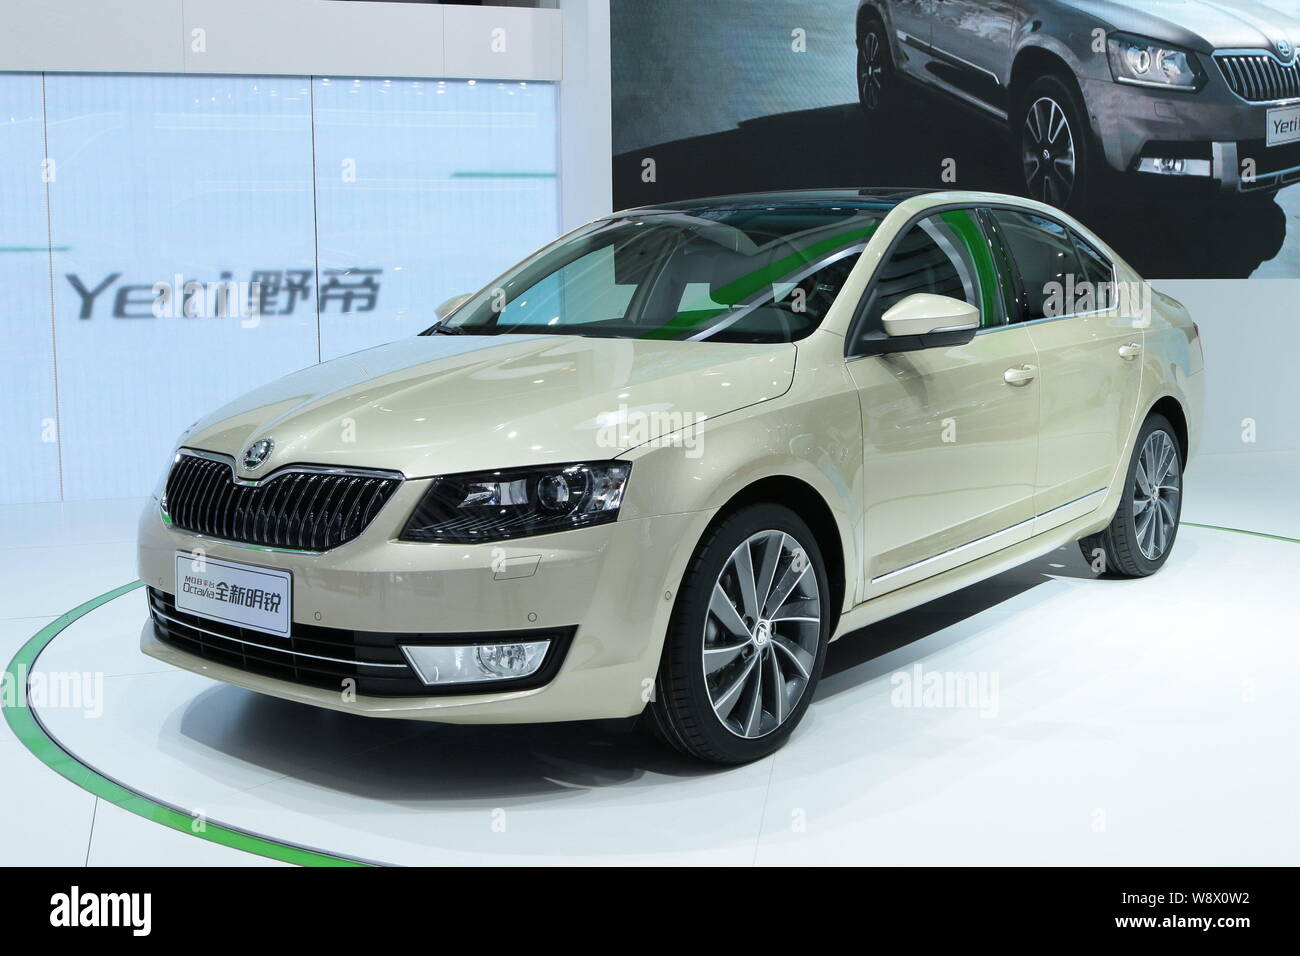 New Skoda Octavia hits the China car market